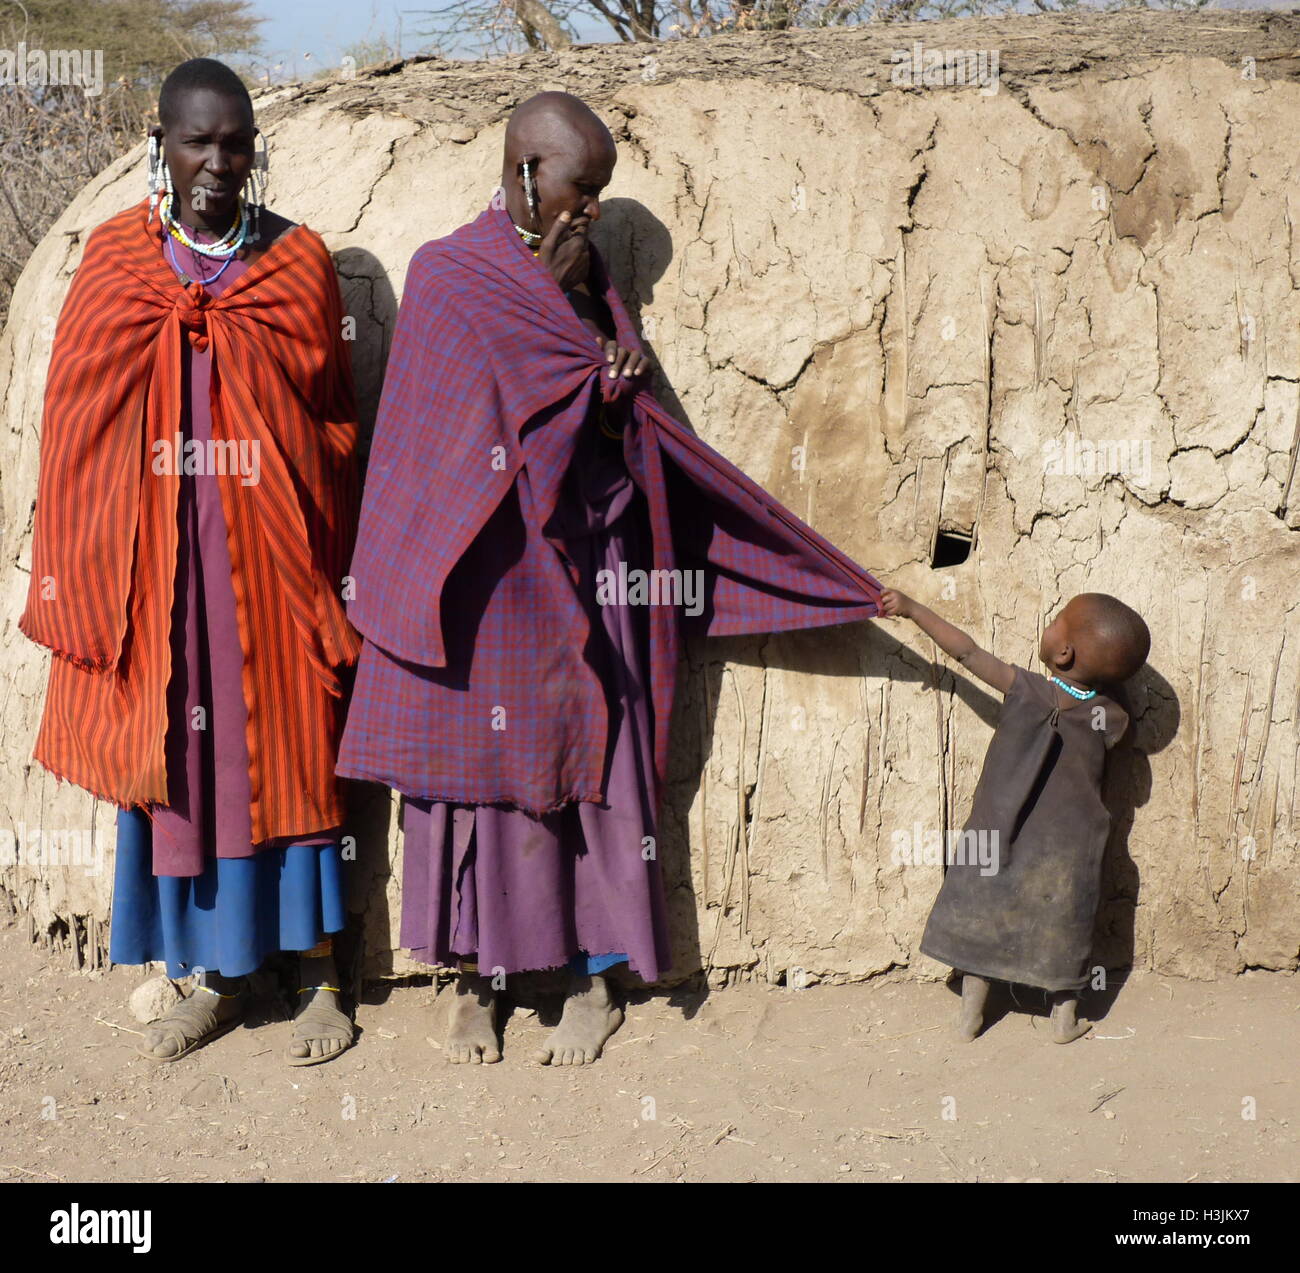 Masai famiglia in abiti tradizionali con un bambino piccolo tirando a madre di vestiti per ottenere attenzione,in piedi di fronte a capanna di fango. Foto Stock